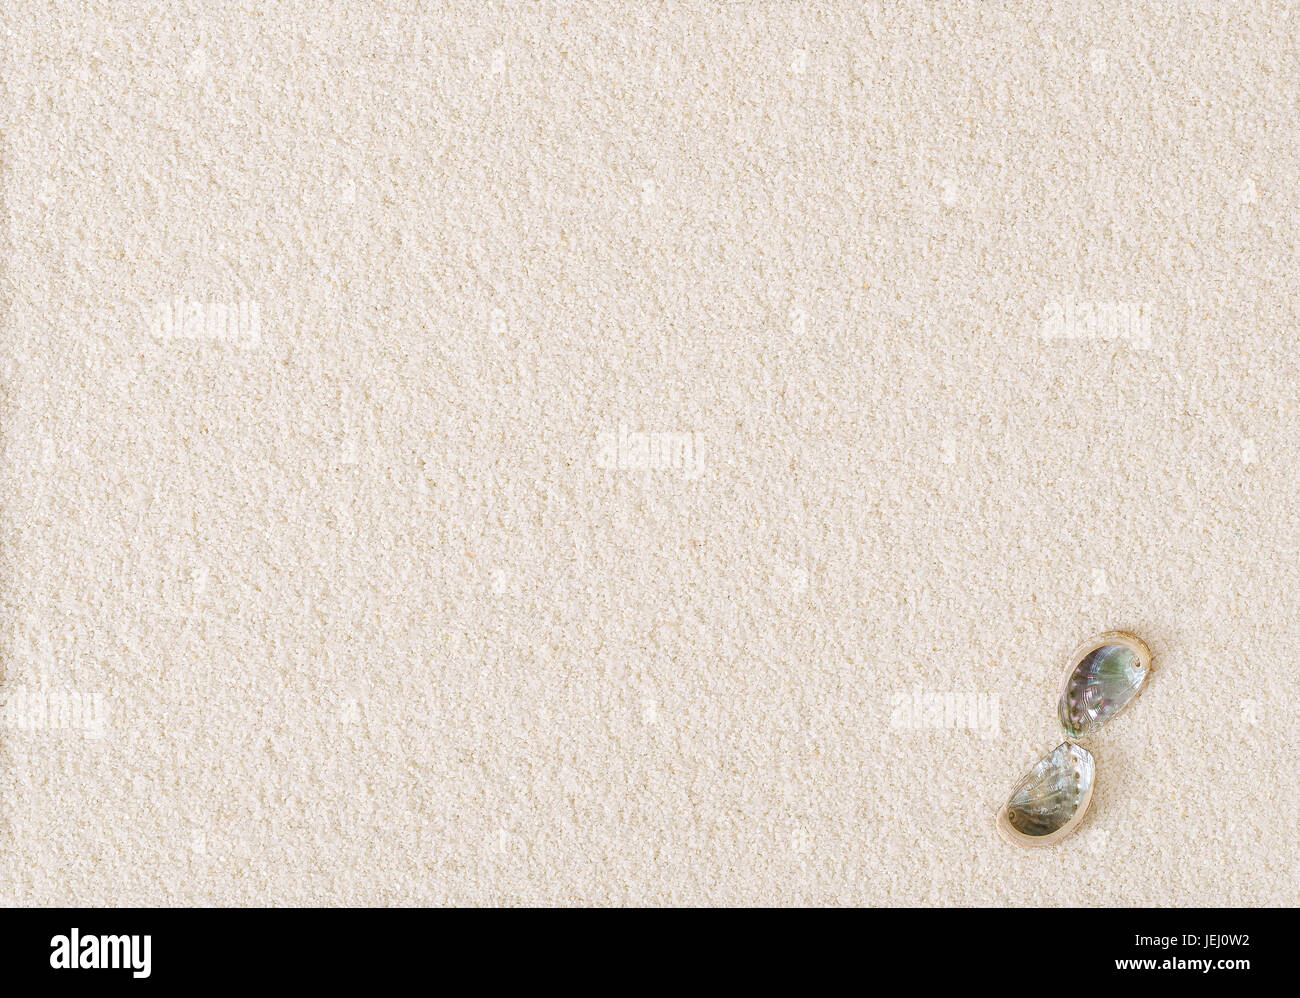 Dos conchas de oreja de mar sobre el plano de la superficie de arena blanca. Ormer, Haliotis, un mar de caracoles marinos y conchas de moluscos gasterópodos con estructura espiral abierto. Foto de stock